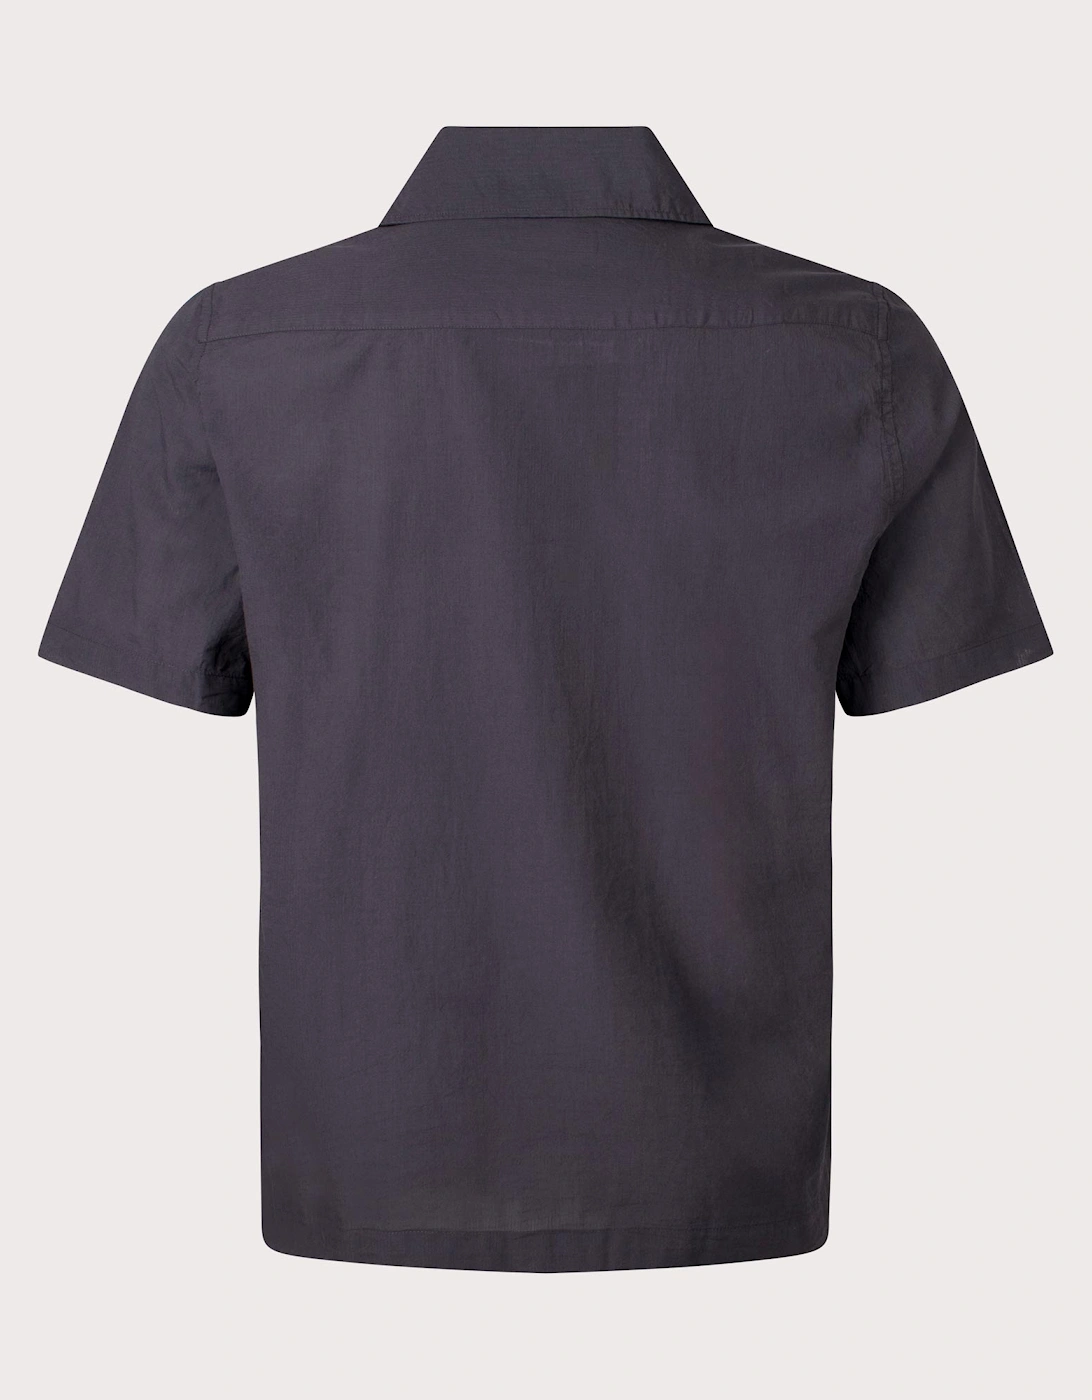 Lightweight Texture Revere Collar Shirt